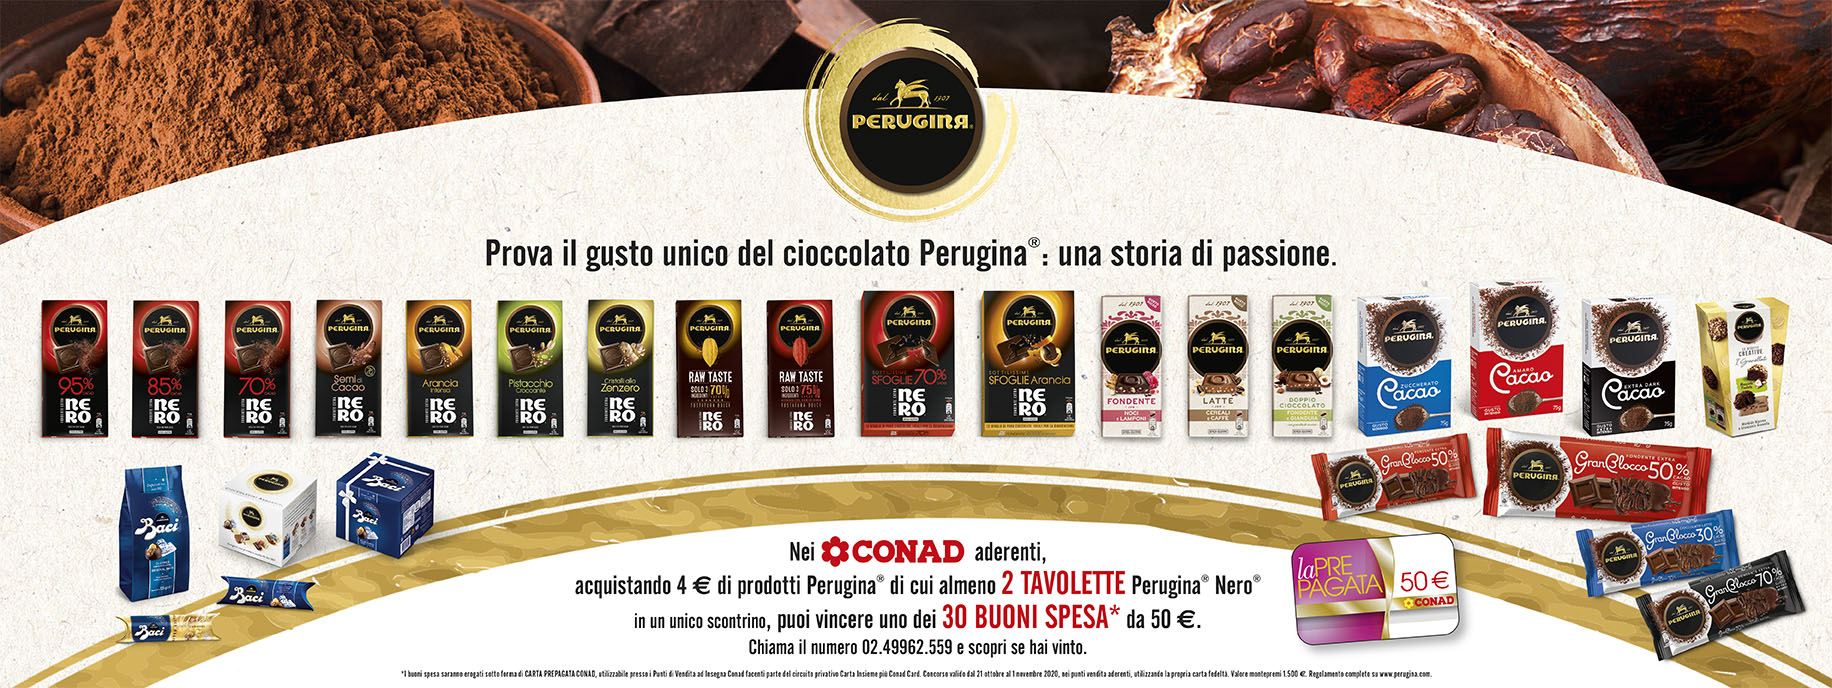 Confezioni di tavolette, cacao e cioccolatini Perugina per partecipare al concorso PAC 2000